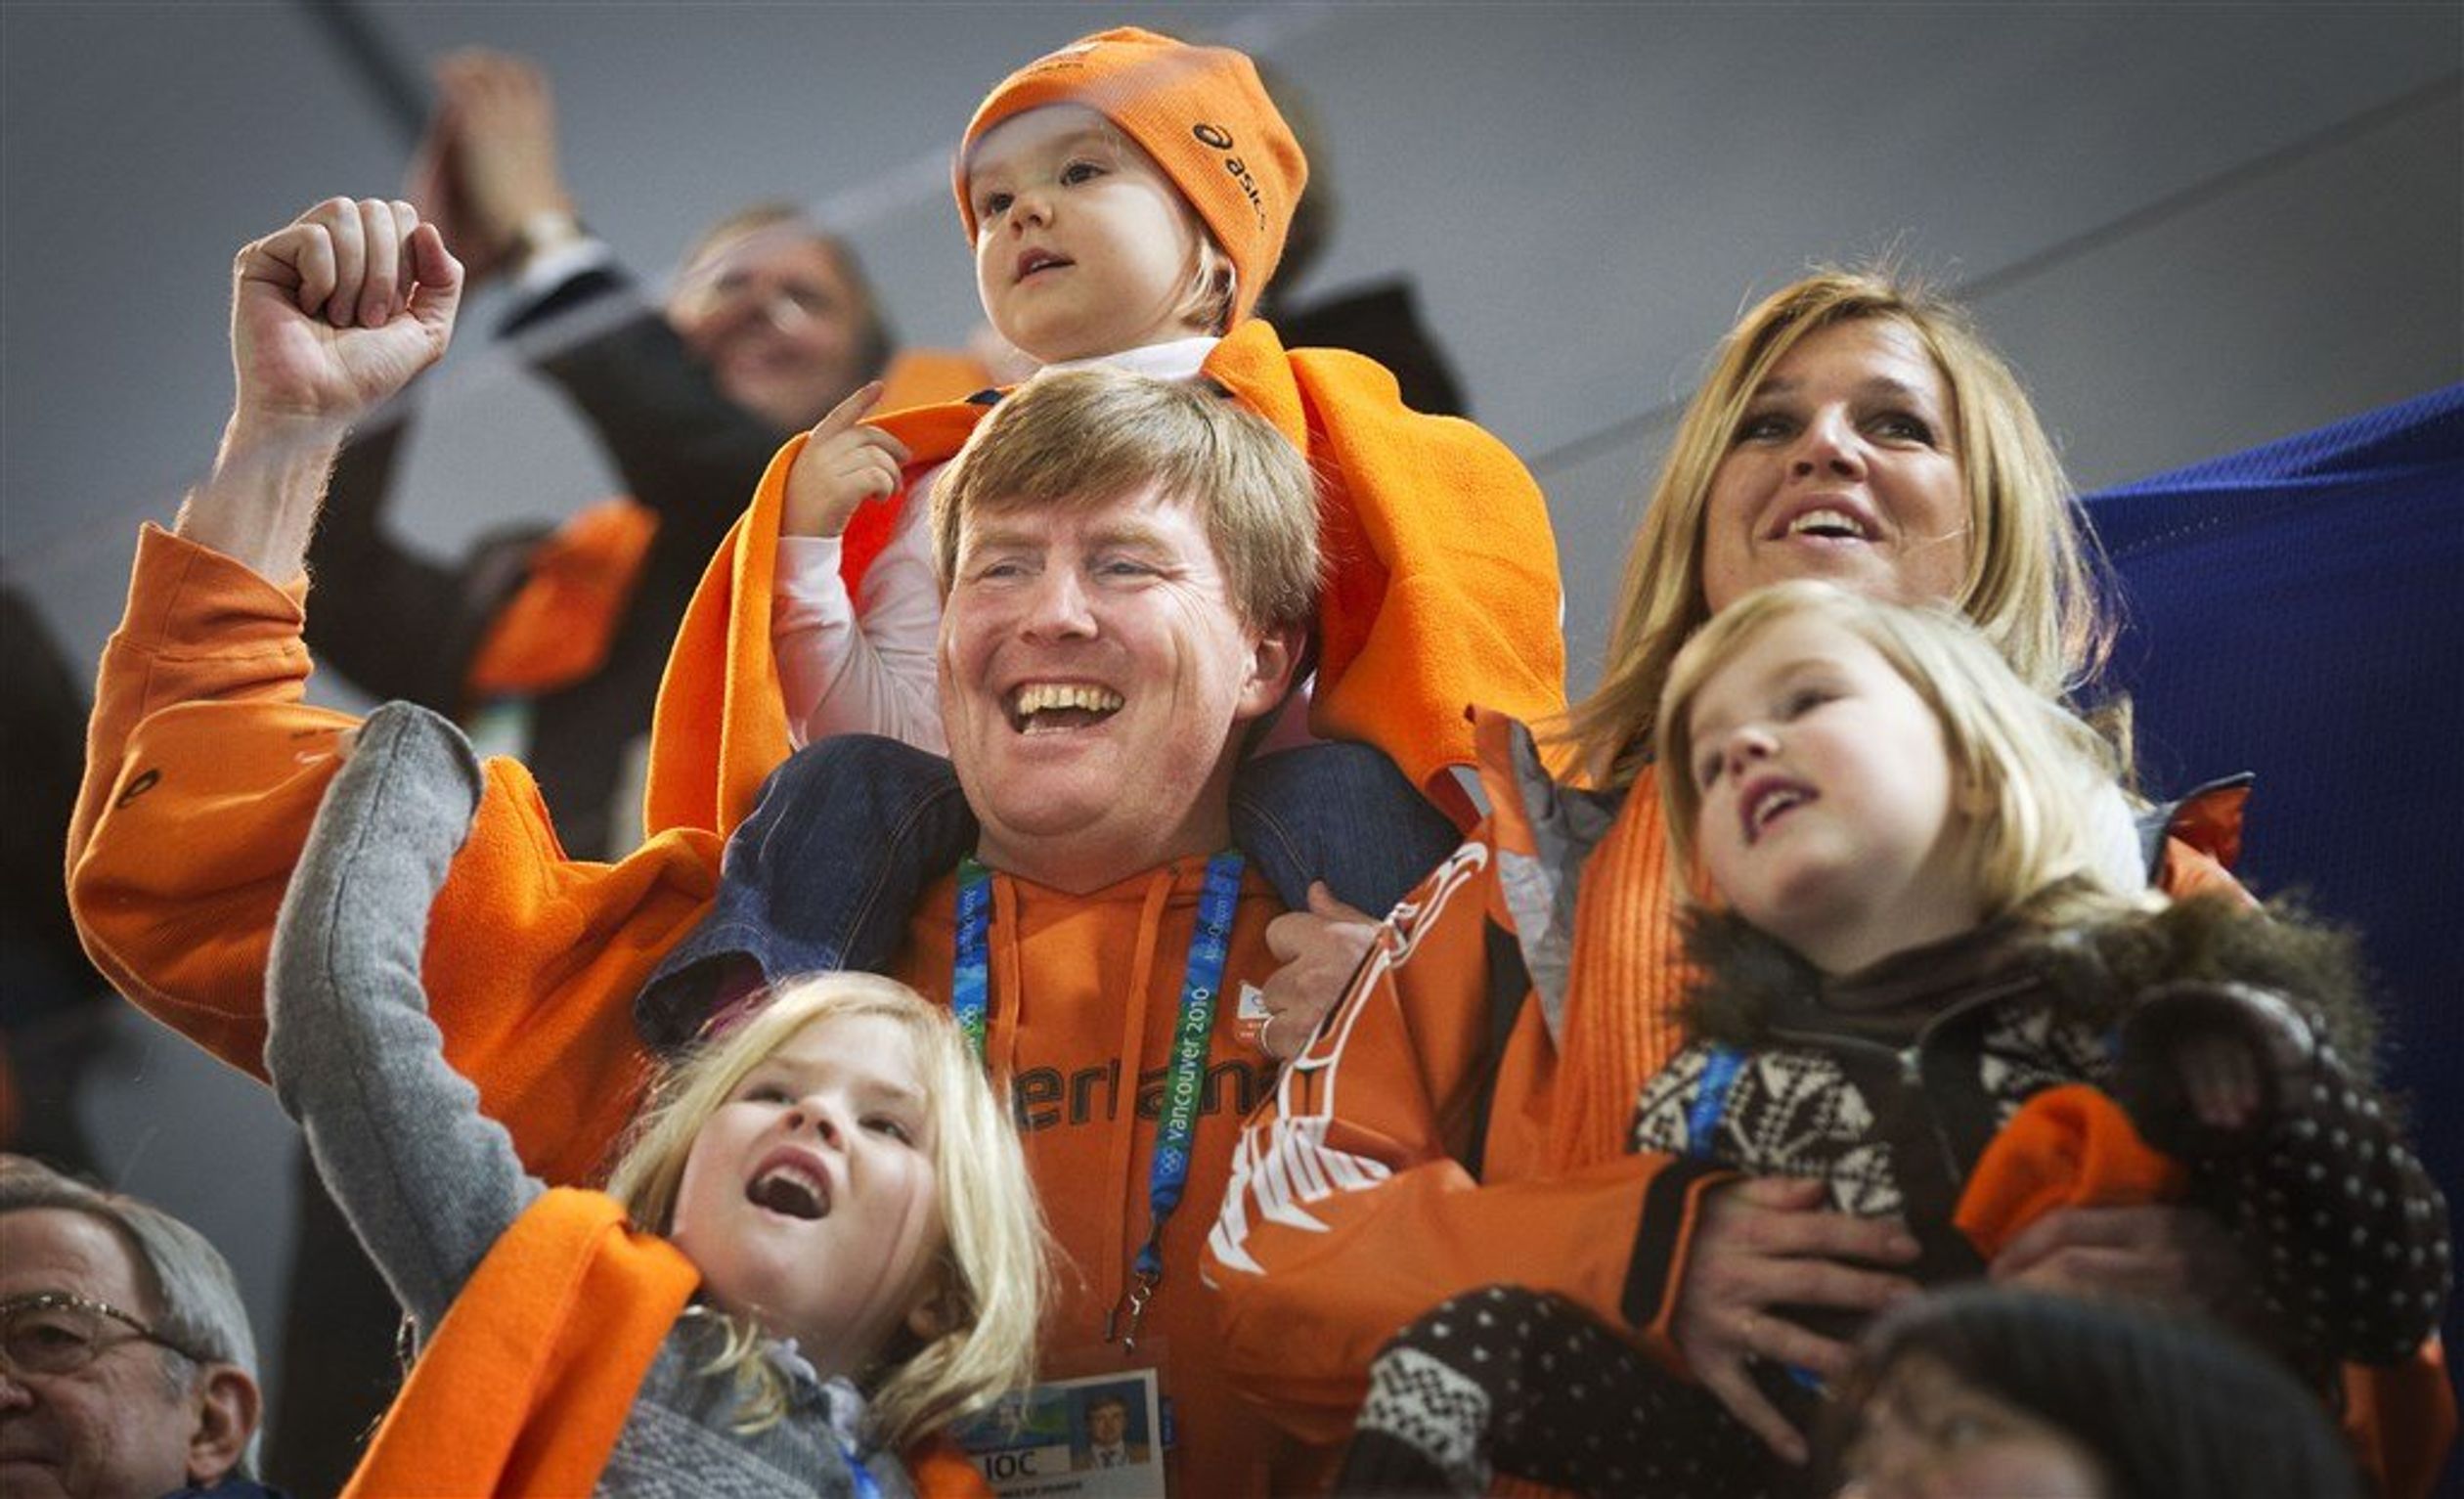 Het koninklijk gezin juicht nadat Sven Kramer goud heeft gewonnen op de 5000 meter op de Olympische